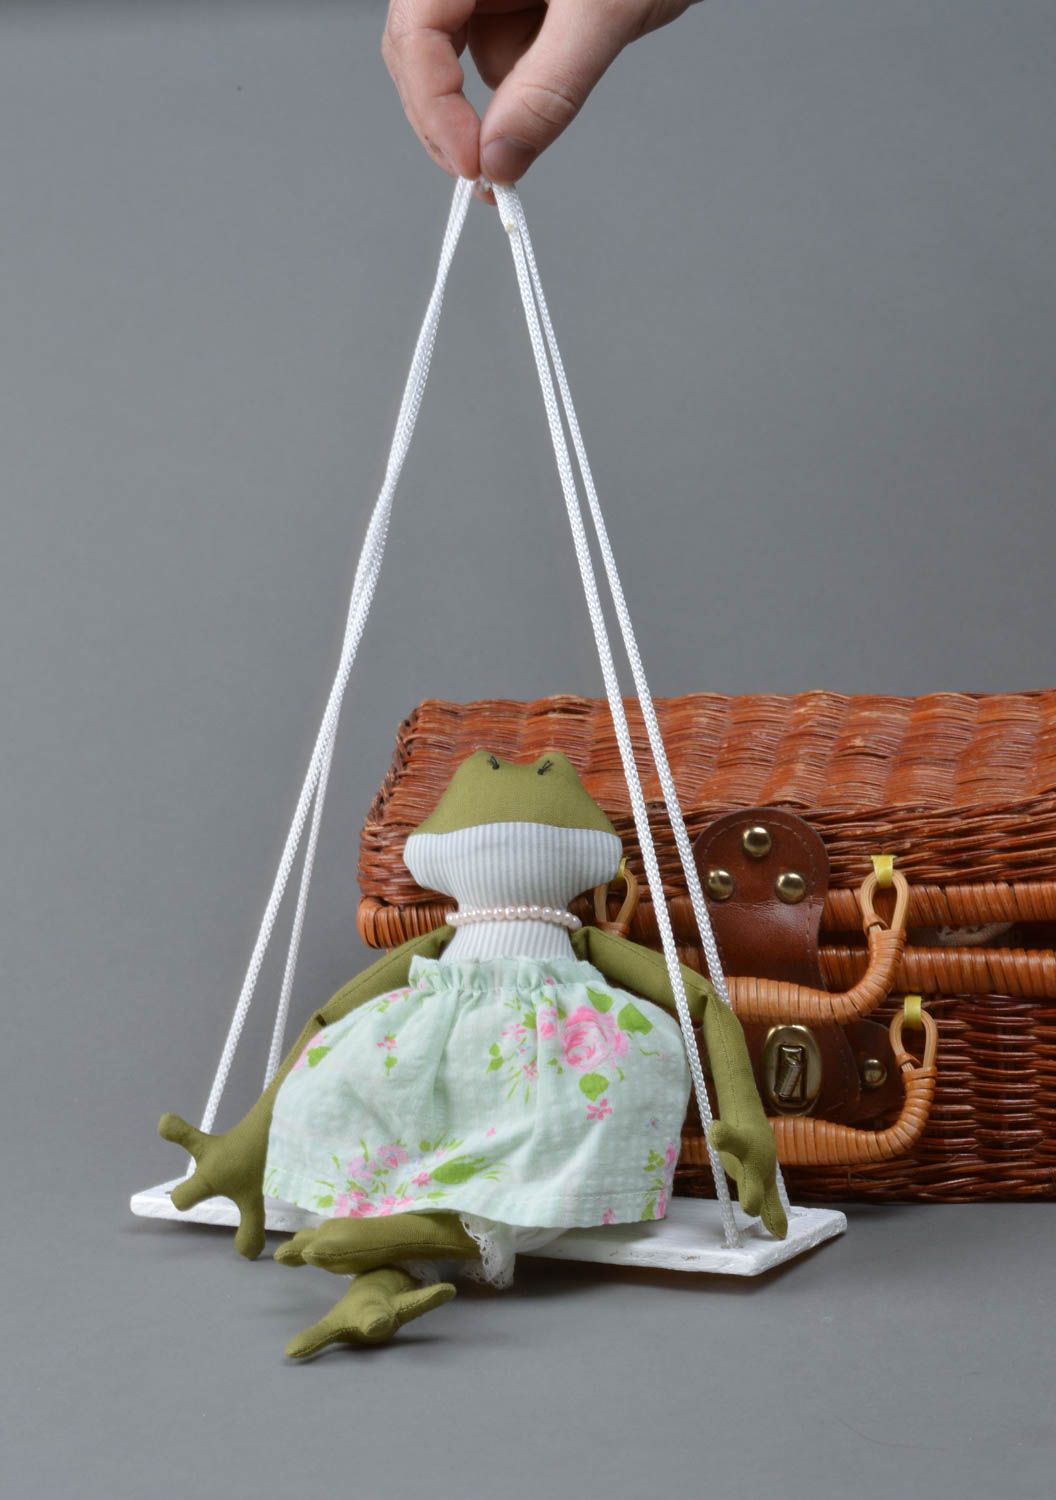 Мягкая игрушка лягушка в платье на качелях для декора детской комнаты хенд мейд фото 4